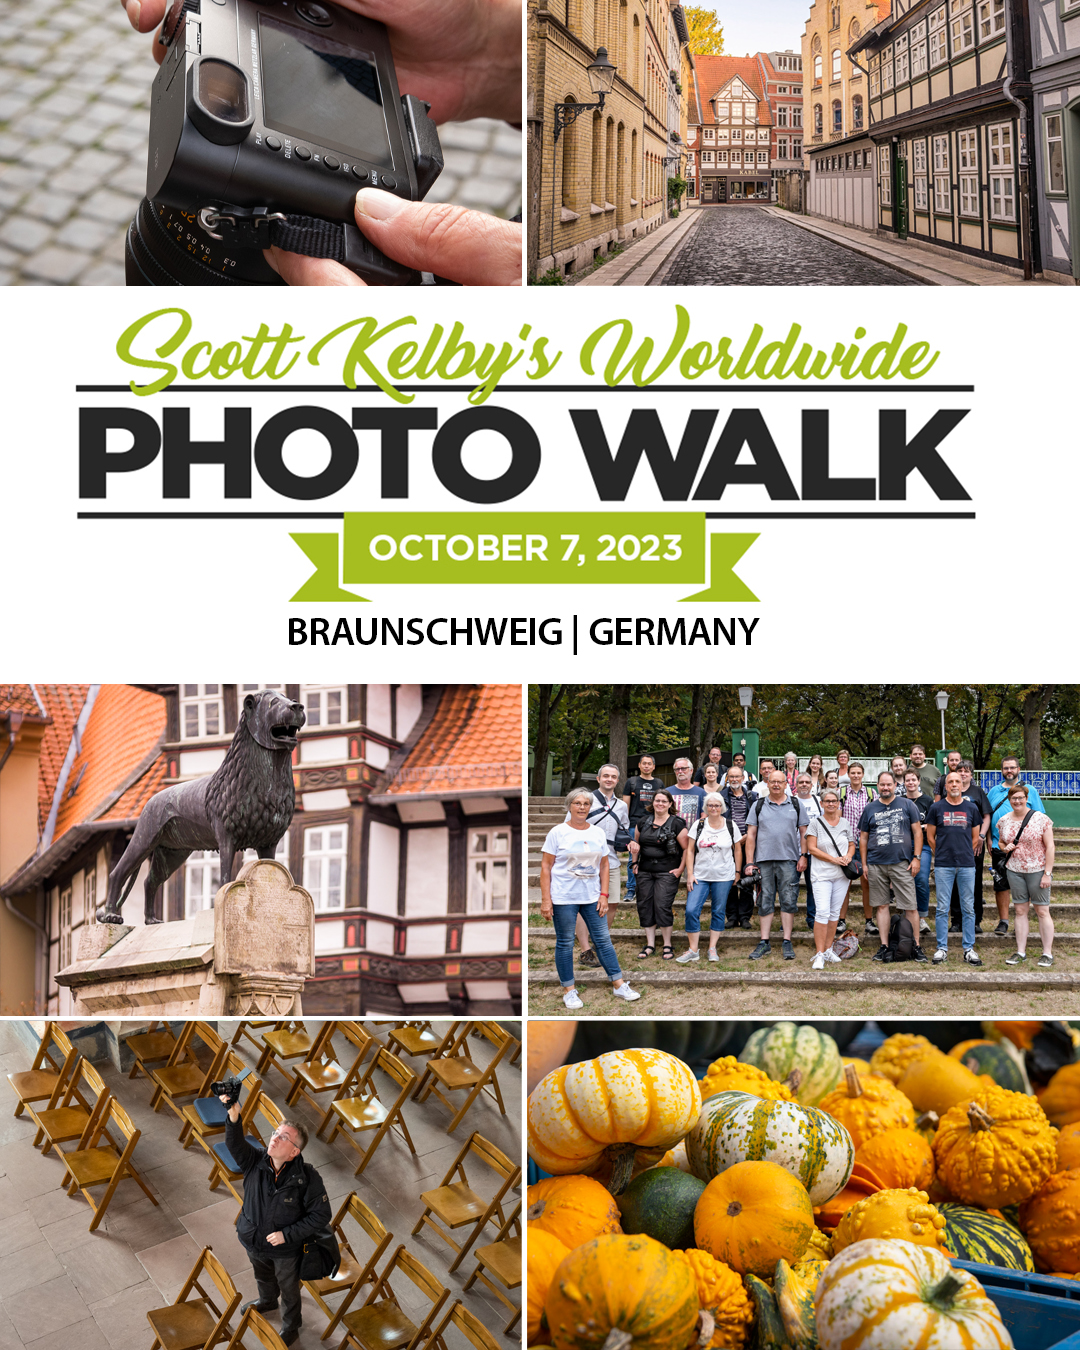 Worldwide Photo Walk Braunschweig 2023